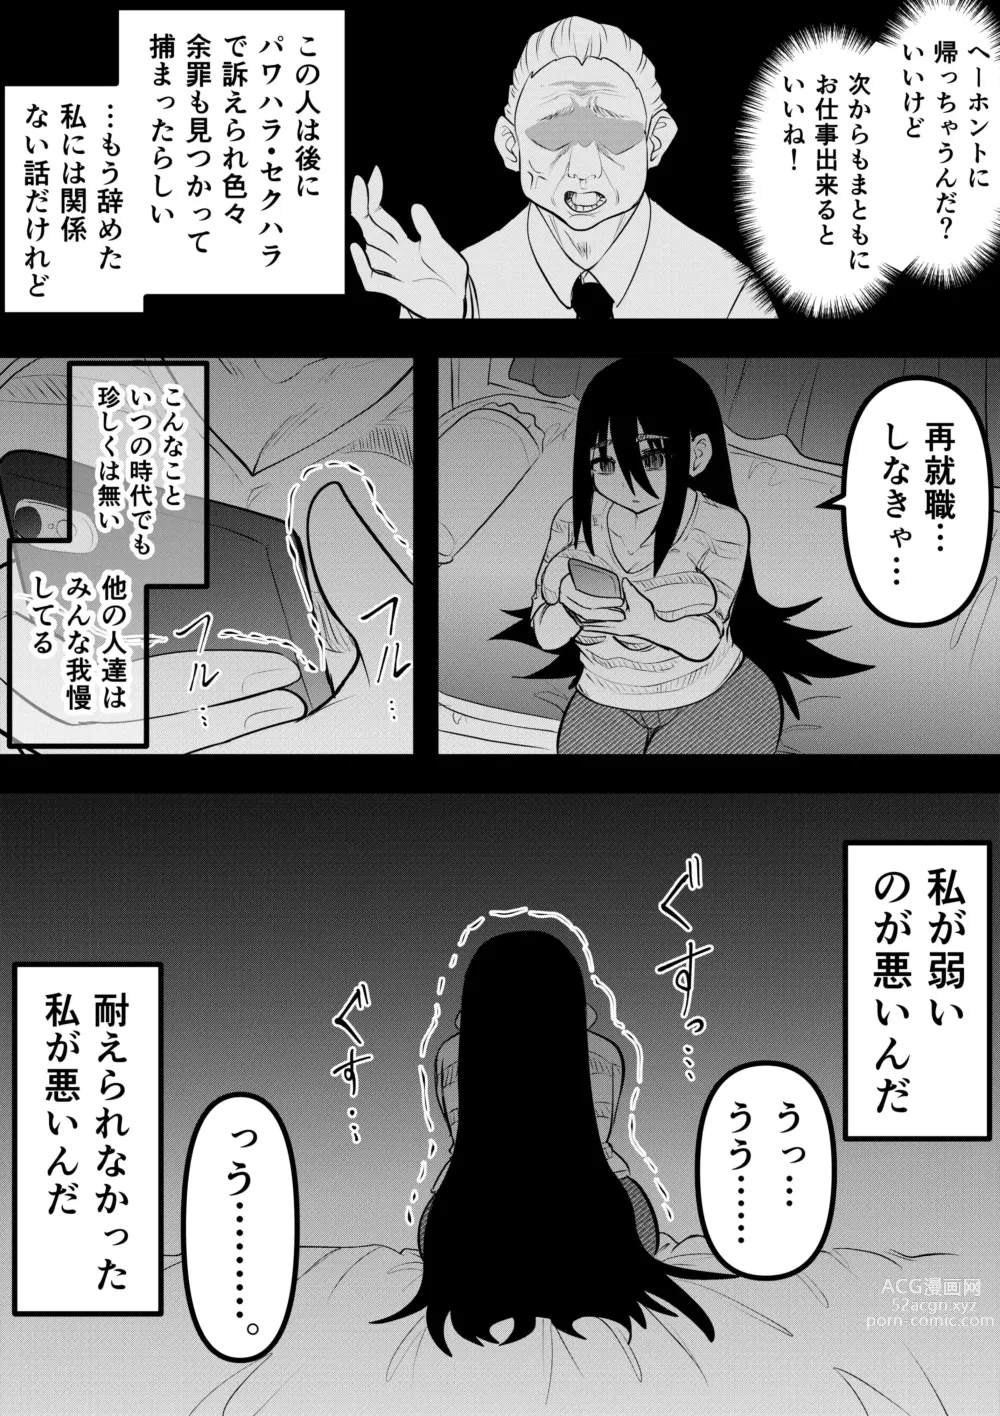 Page 78 of doujinshi Neet ni Natteita Hatsukoi no Hito o Shiawase ni suru made